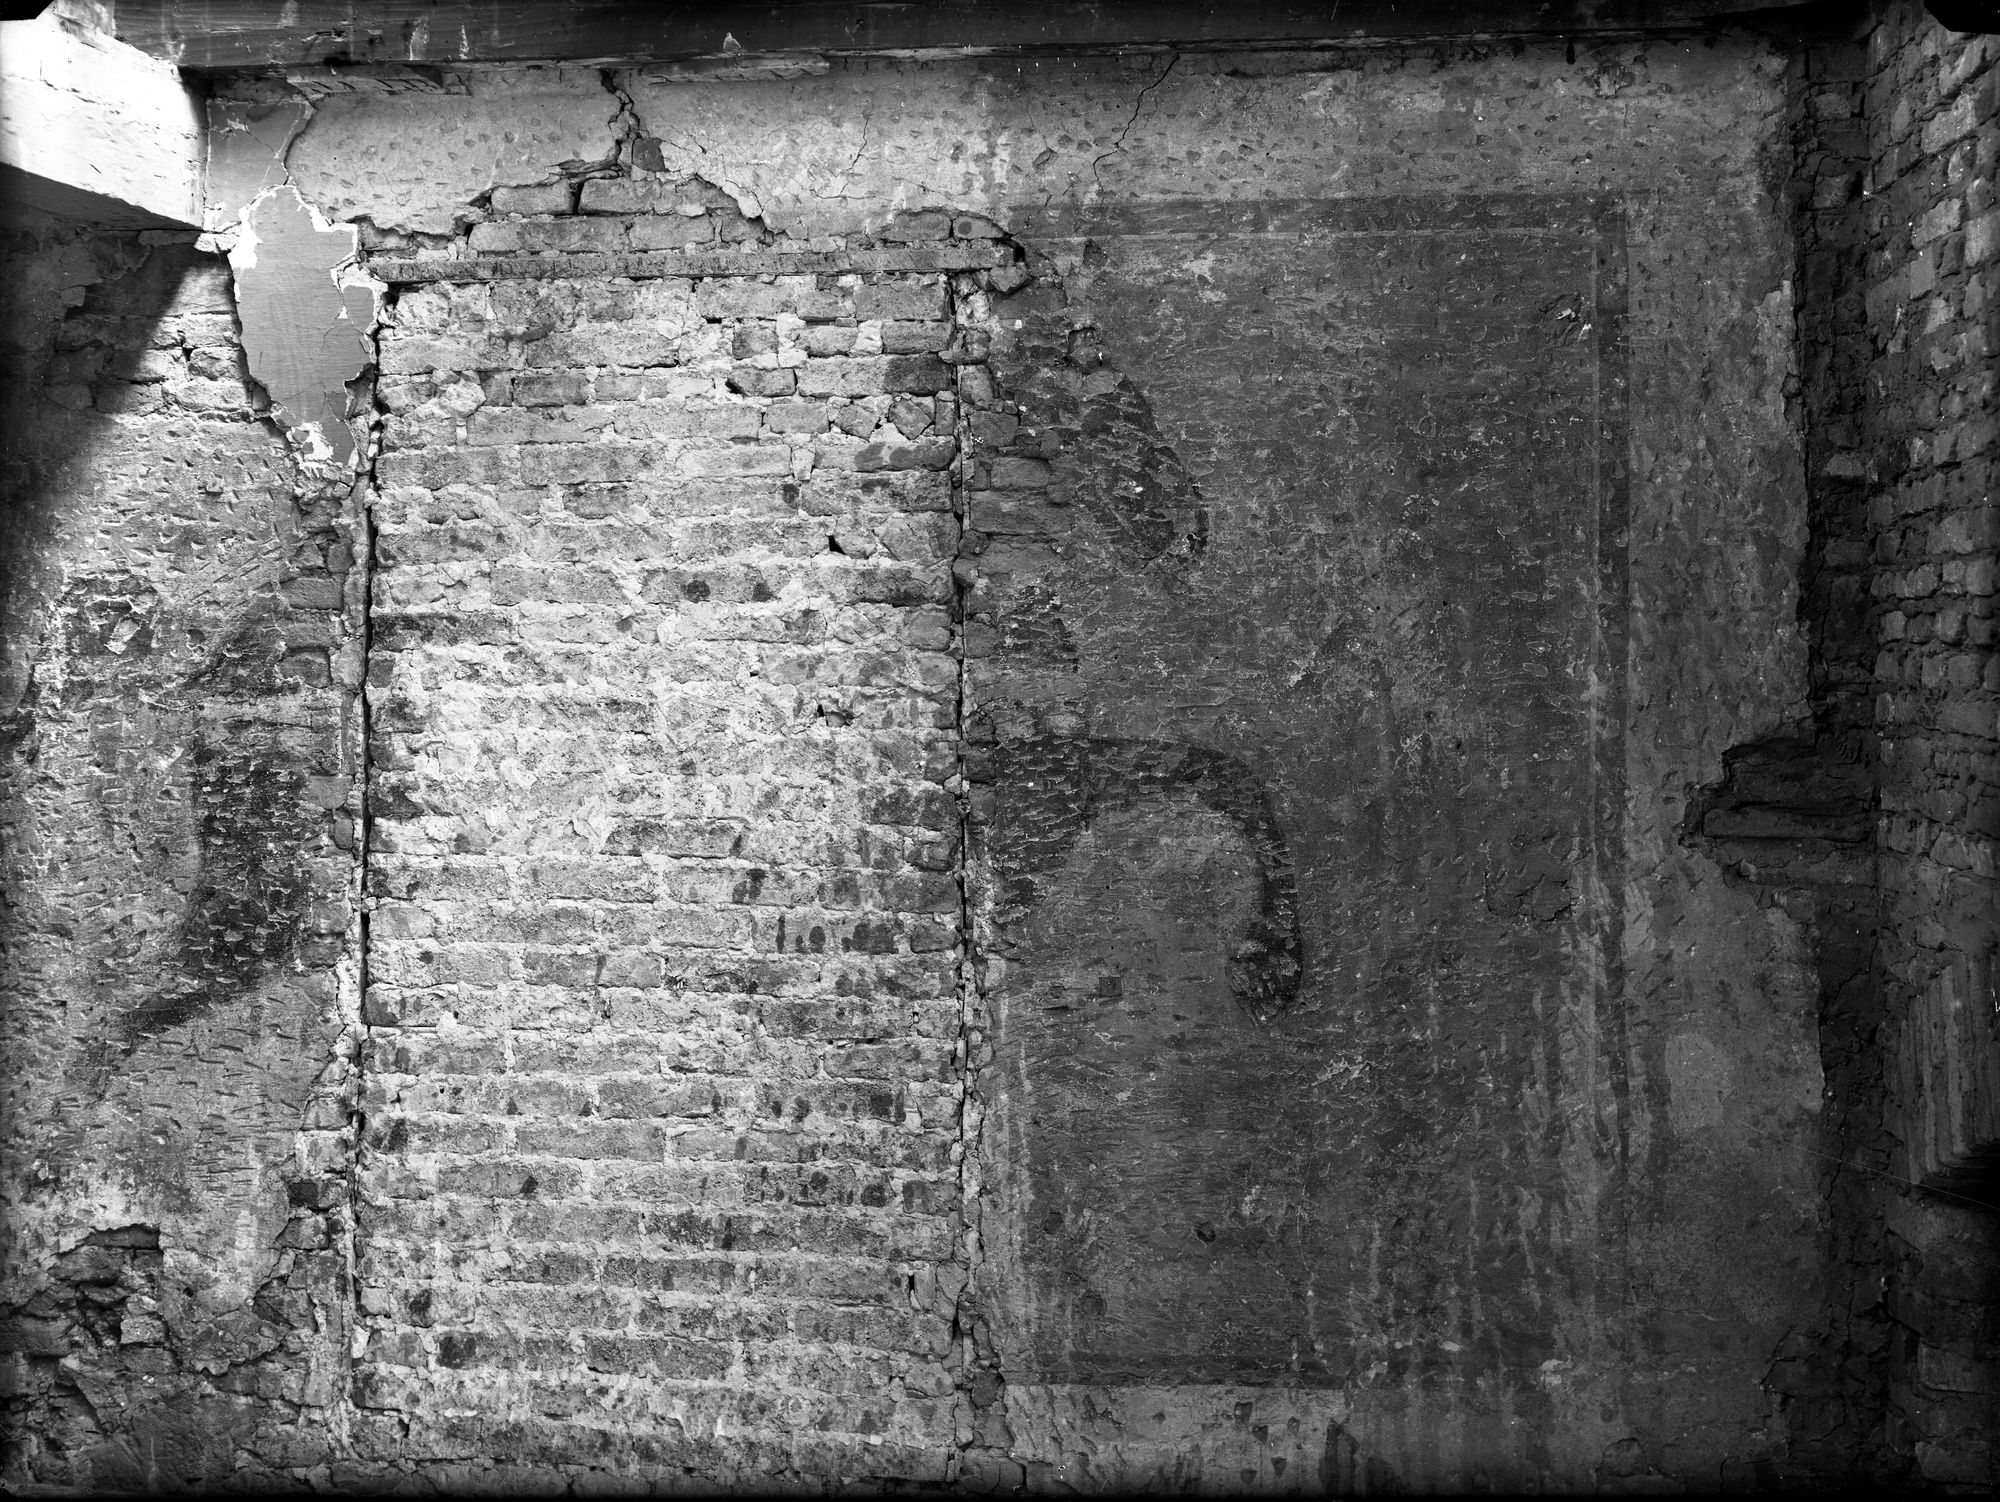 Via Diaz. Traccie di decorazione romanica dell'atrio dello stabile n. 26-30 (negativo) di Gabinetto fotografico (XX)